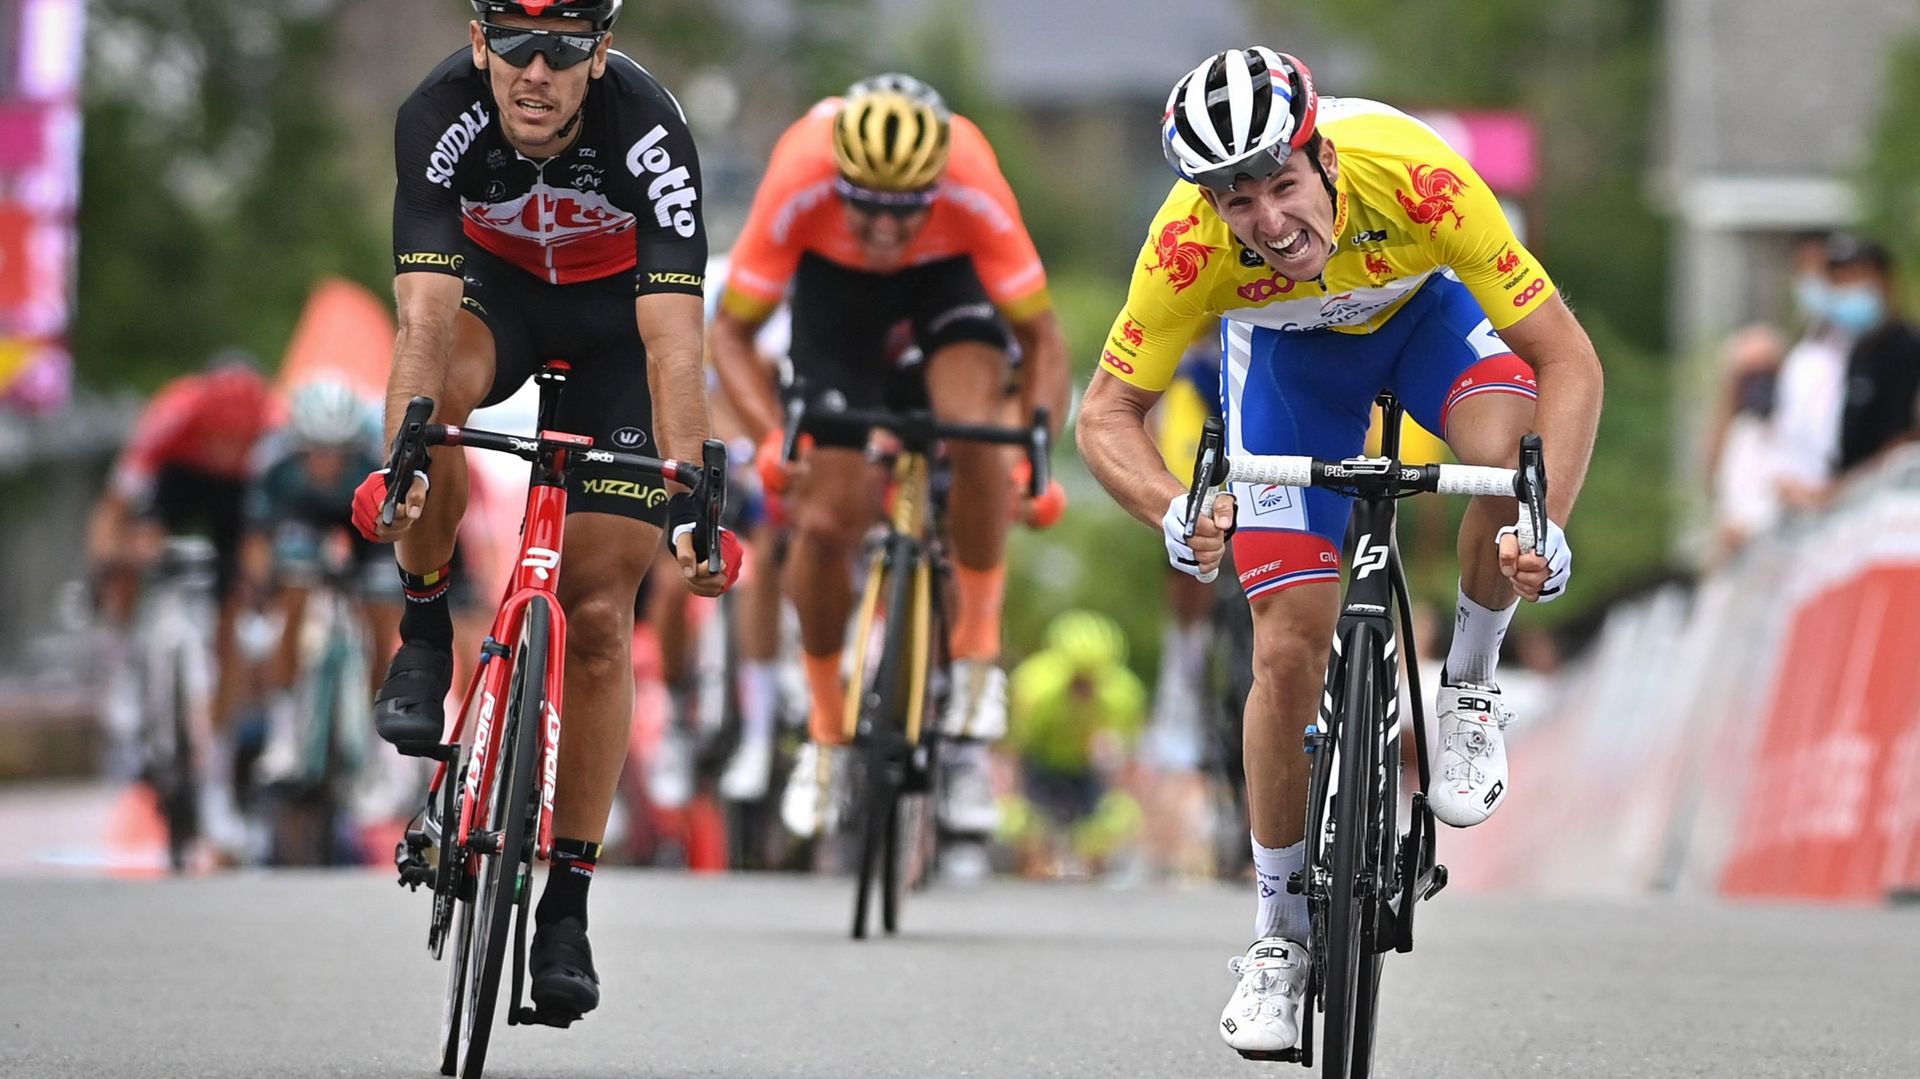 L’édition 2020 du Tour de Wallonie avait vu la victoire finale du Français Arnaud Démare. Il l’avait emporté devant Greg Van Avermaet et Amaury Capiot.